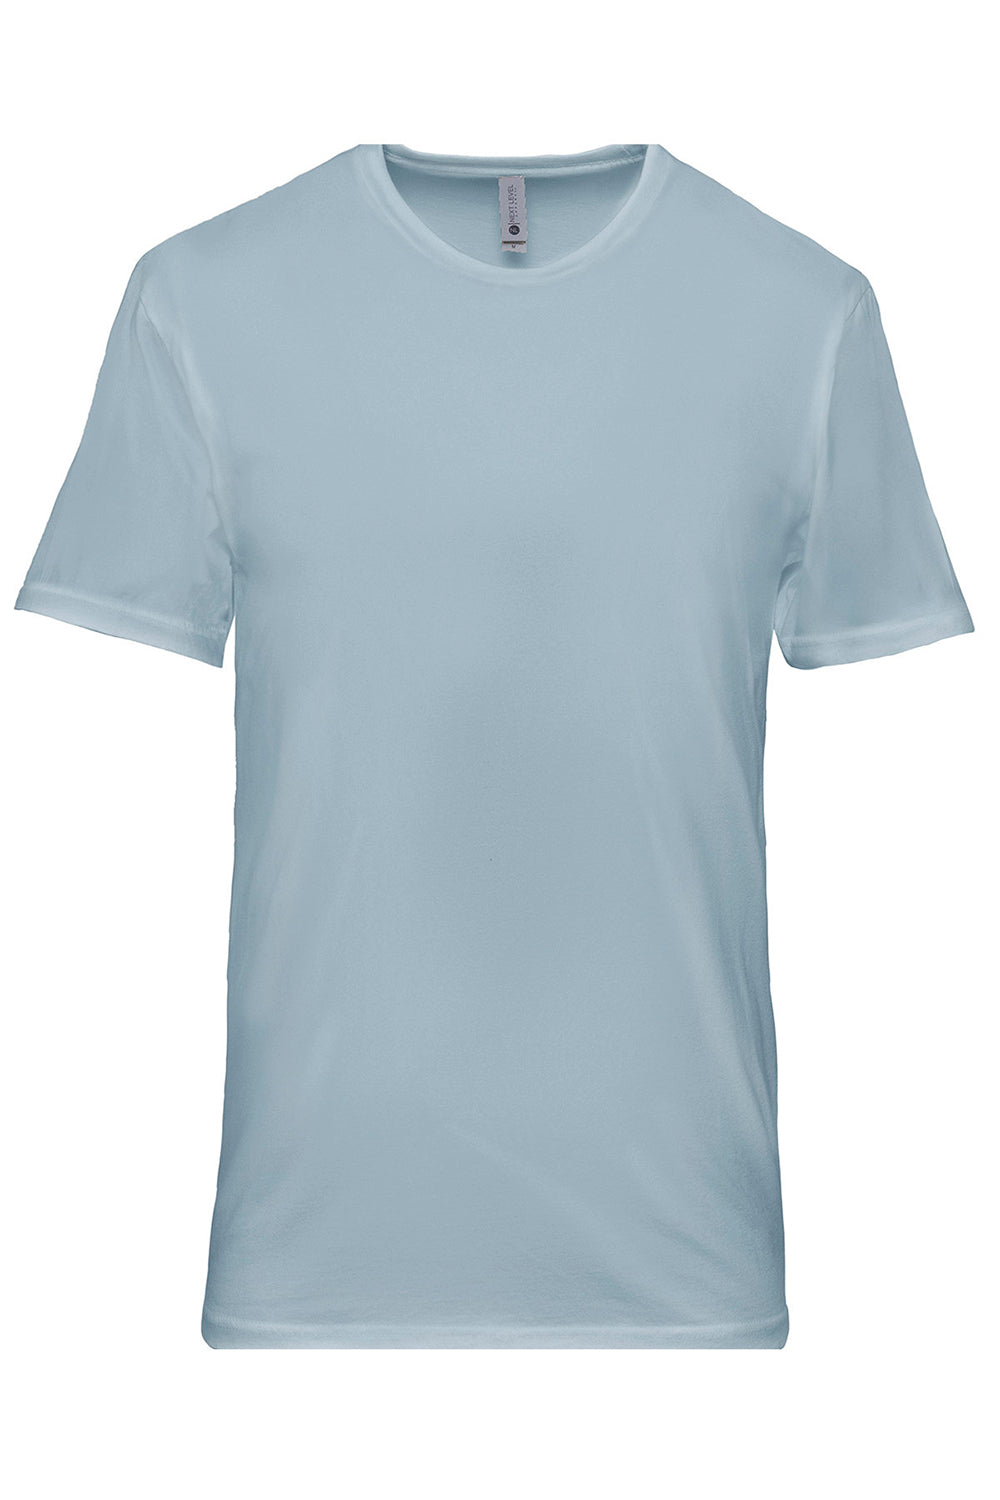 Next Level 3600SW Mens Soft Wash Short Sleeve Crewneck T-Shirt Stonewashed Denim Blue Flat Front